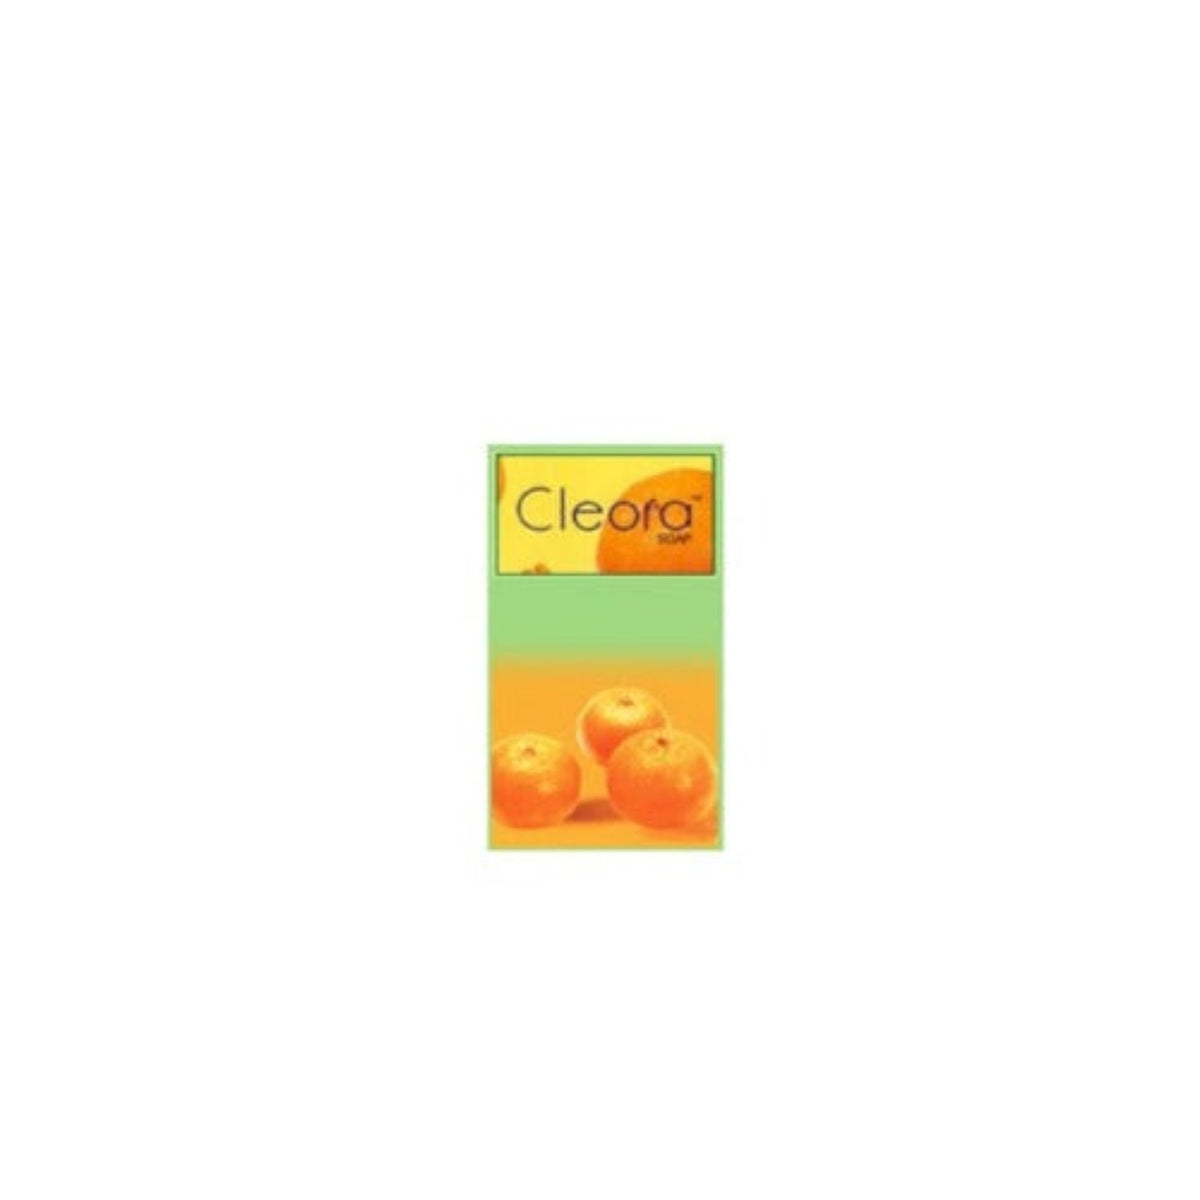 Aries Biocare Cleora Skin Care Soap 75 Gm